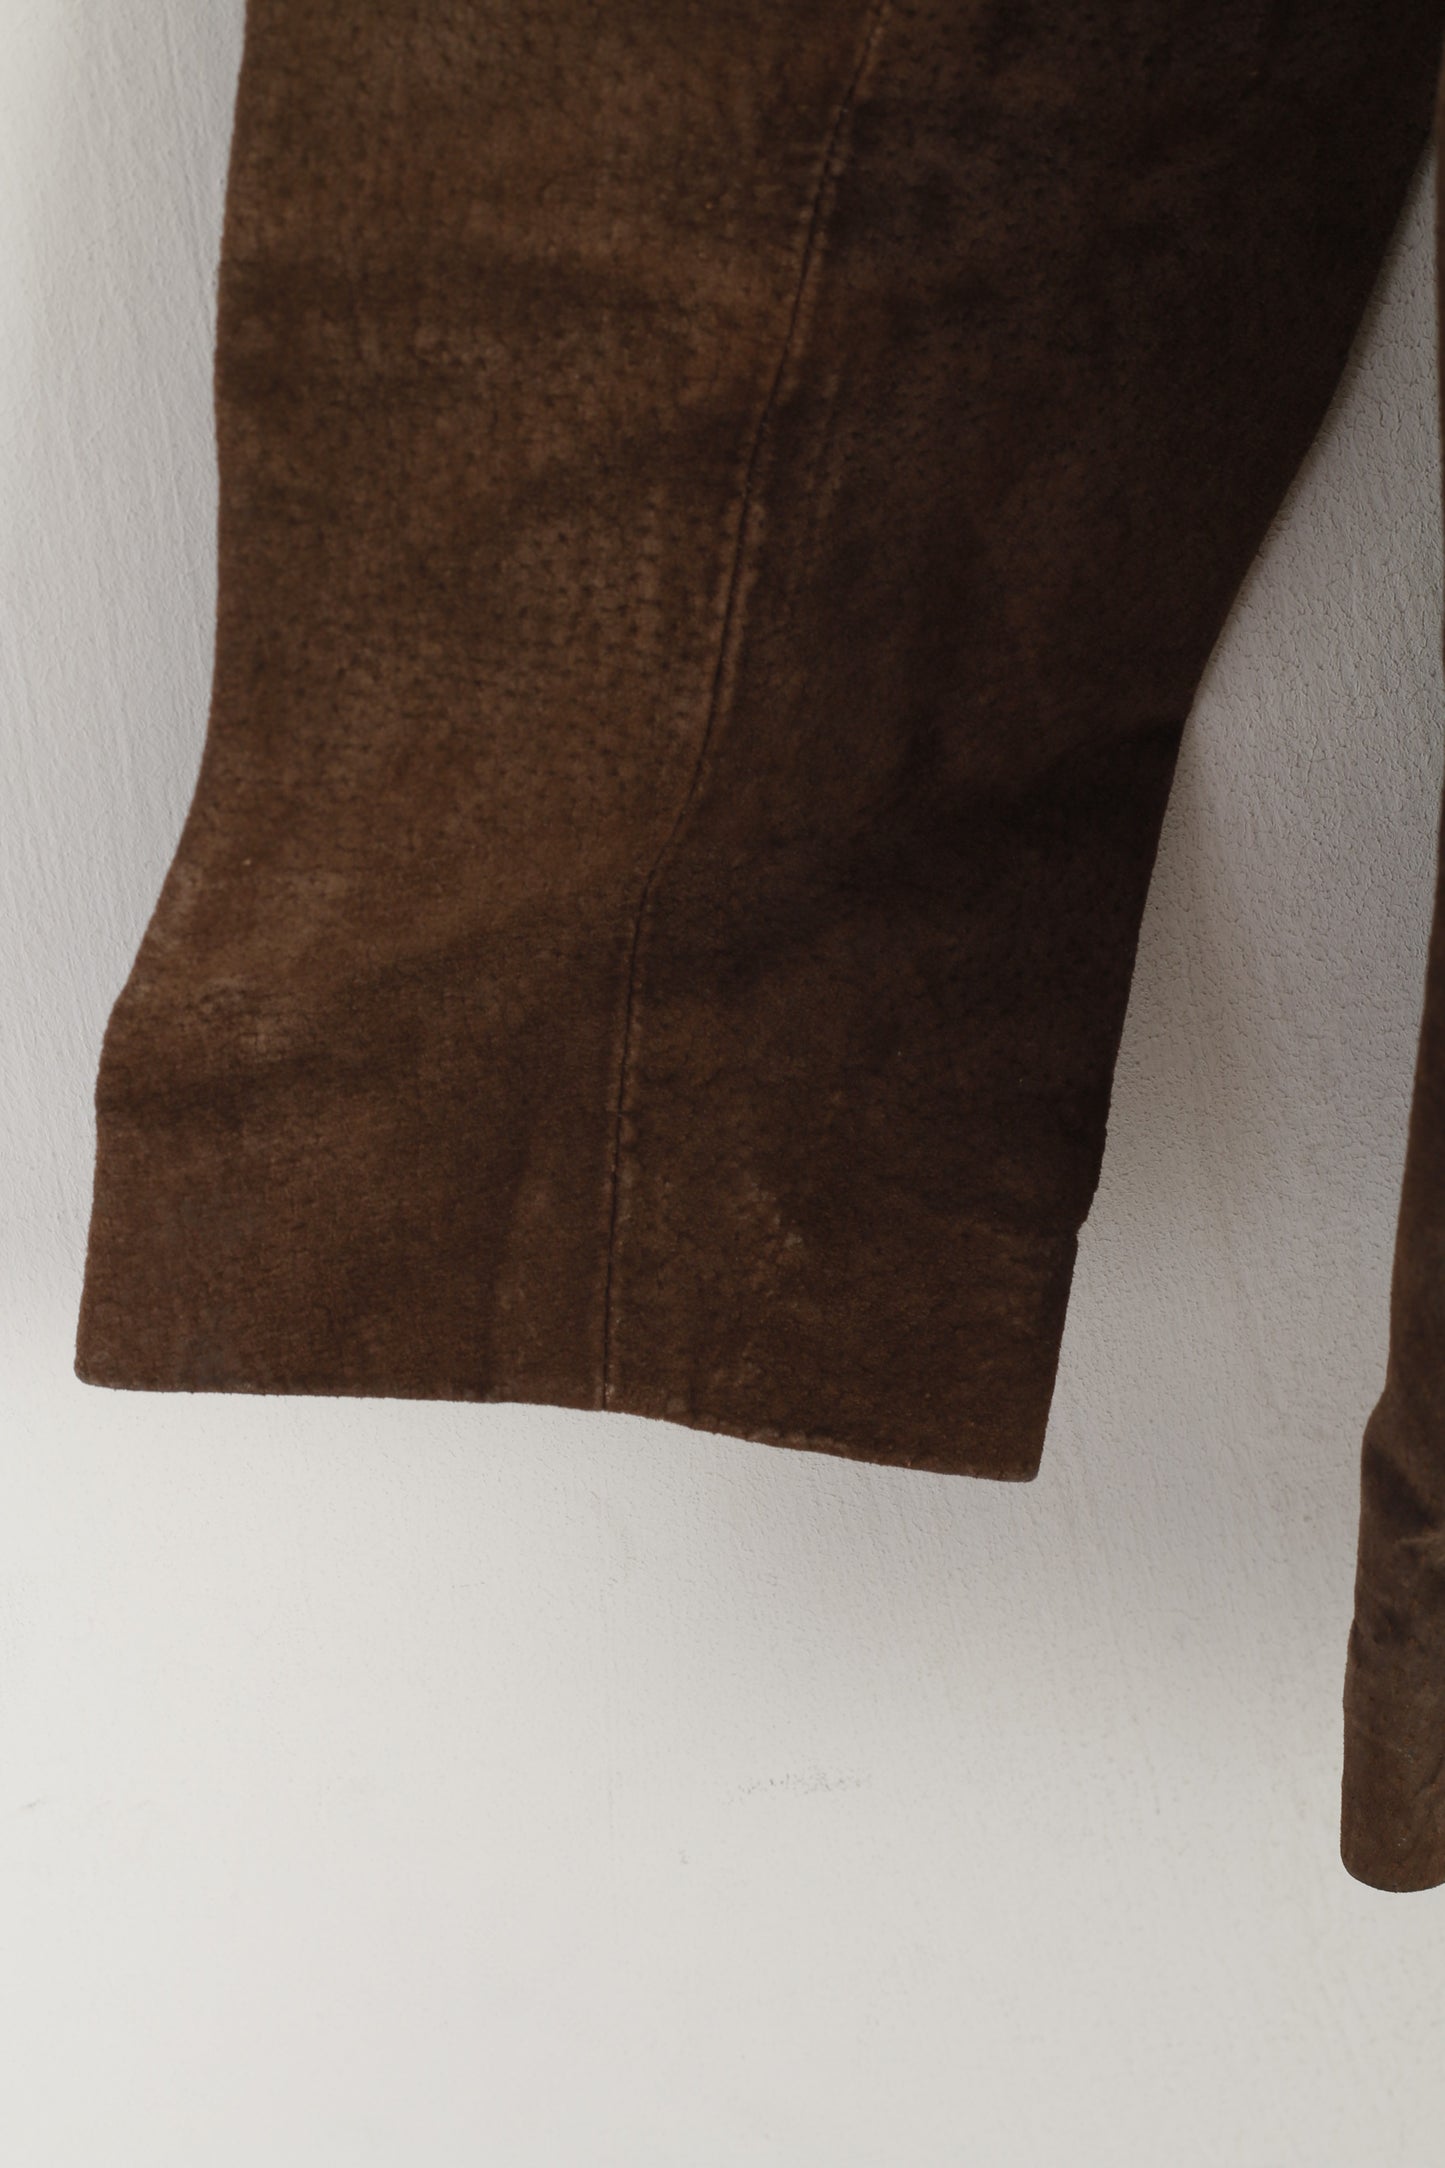 Joie de Vivre Women 16 L Jacket Brown Suede Leather Vintage Western Buttoned Top